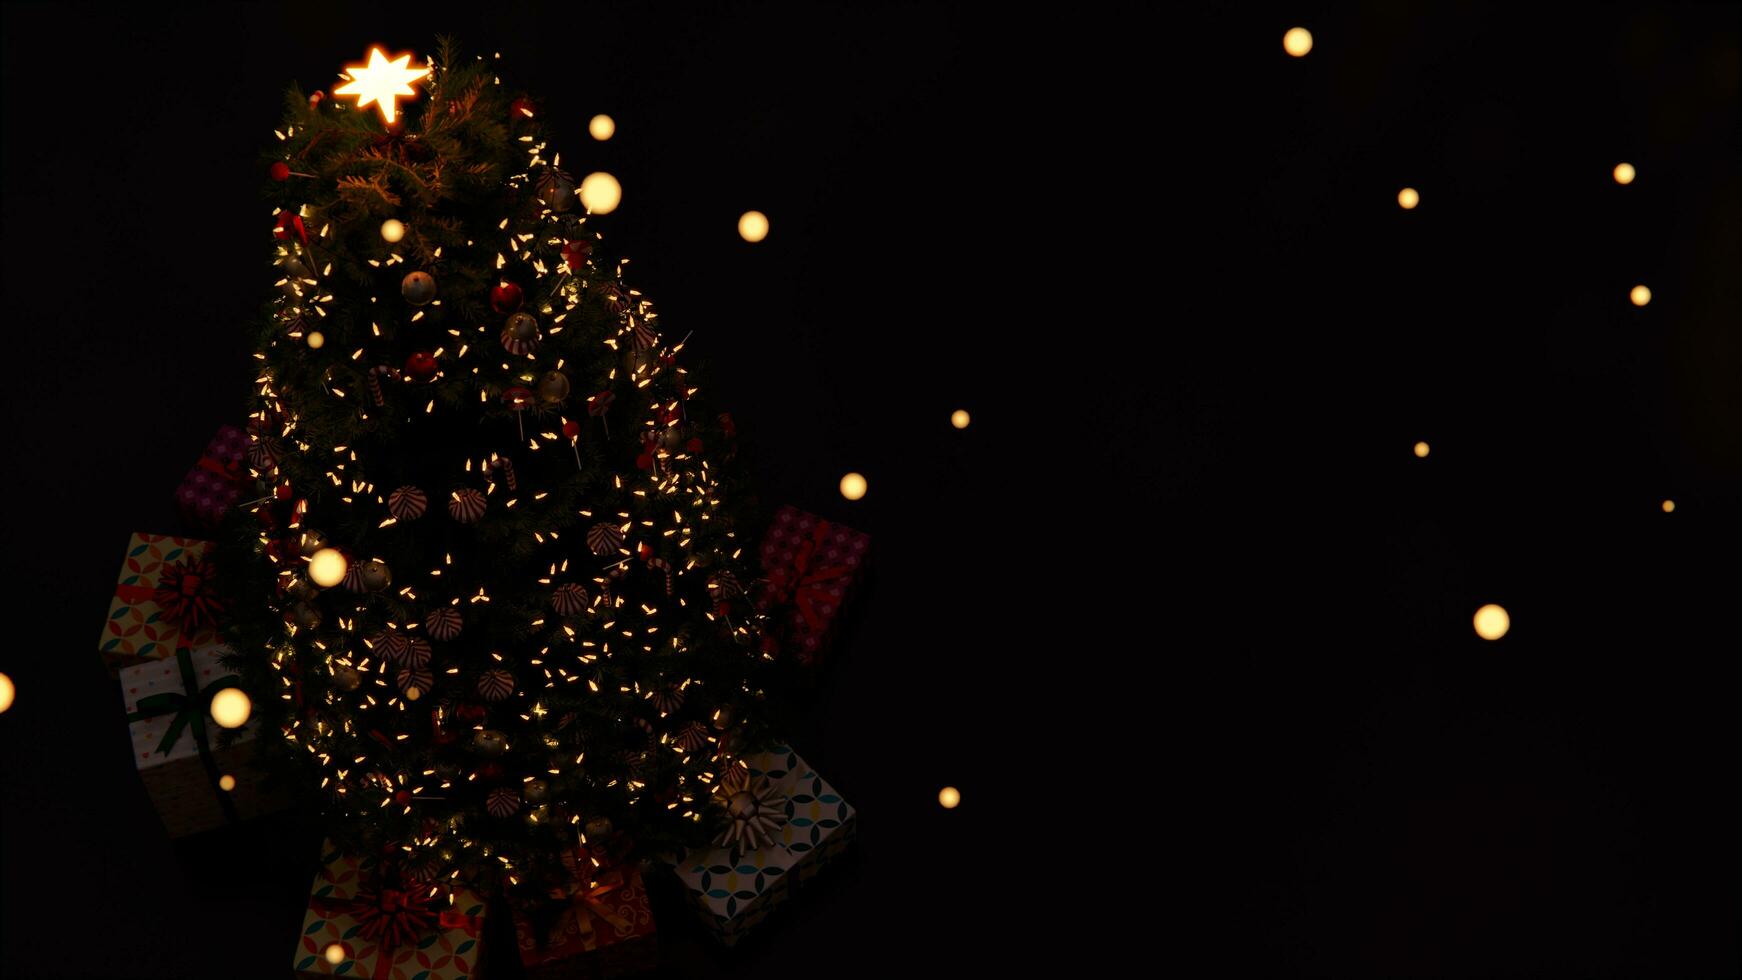 3d Kunstwerk ,Weihnachten Baum Dekoration mit Licht, Glas Ball und rot Ornamente auf Hintergrund Bokeh von Seite flackern Licht Glühbirnen Girlanden zum Familie Winter Urlaub. 8 Tausend Auflösung foto